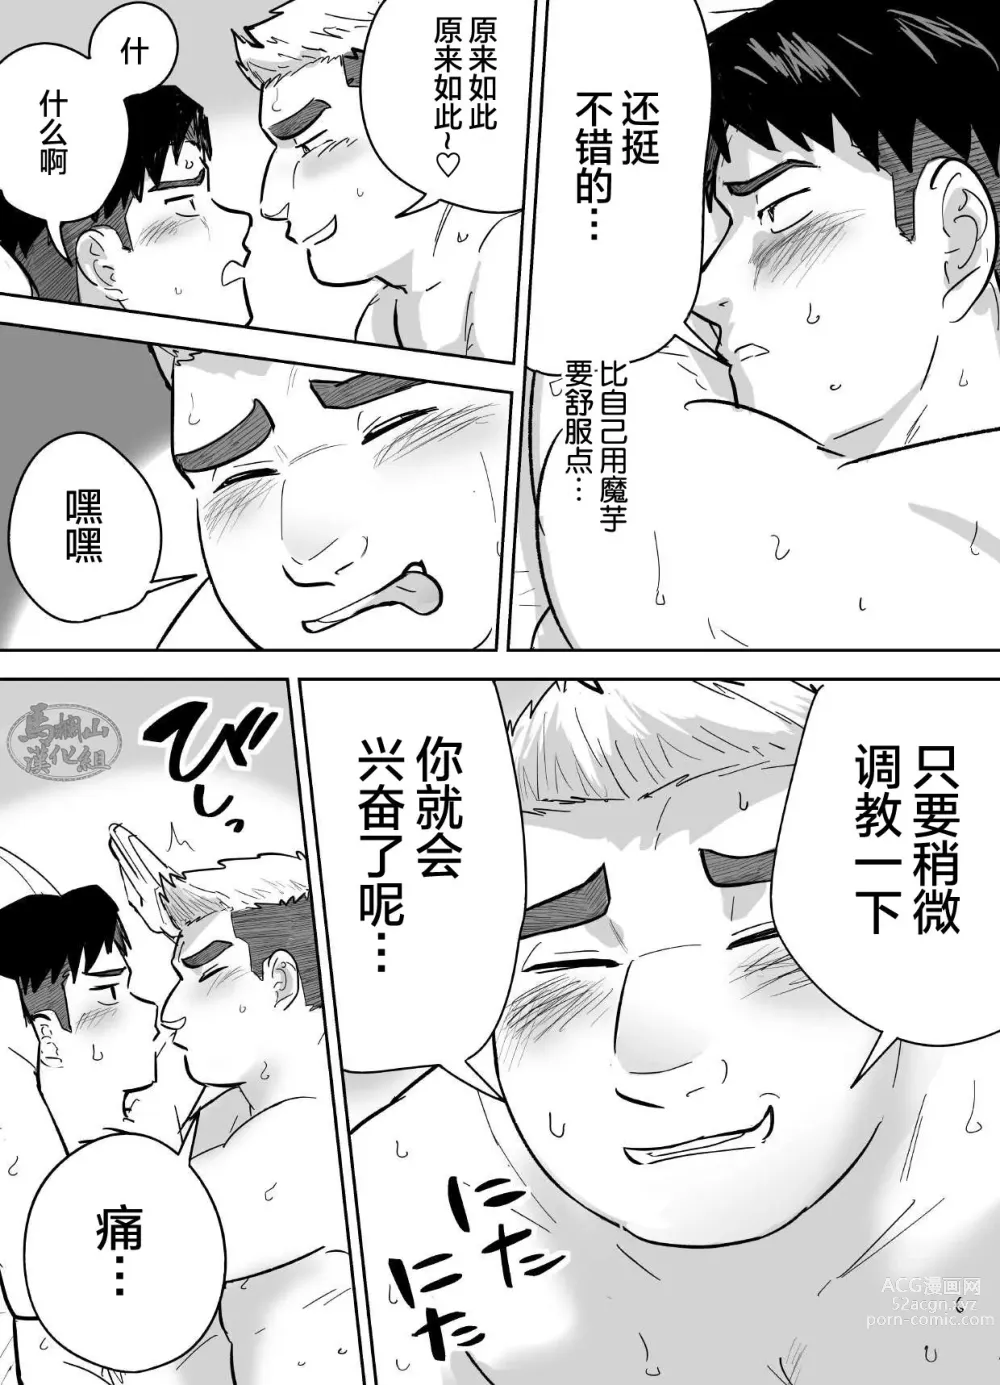 Page 40 of manga 片思いしてるガチムチ同級生に襲われる話